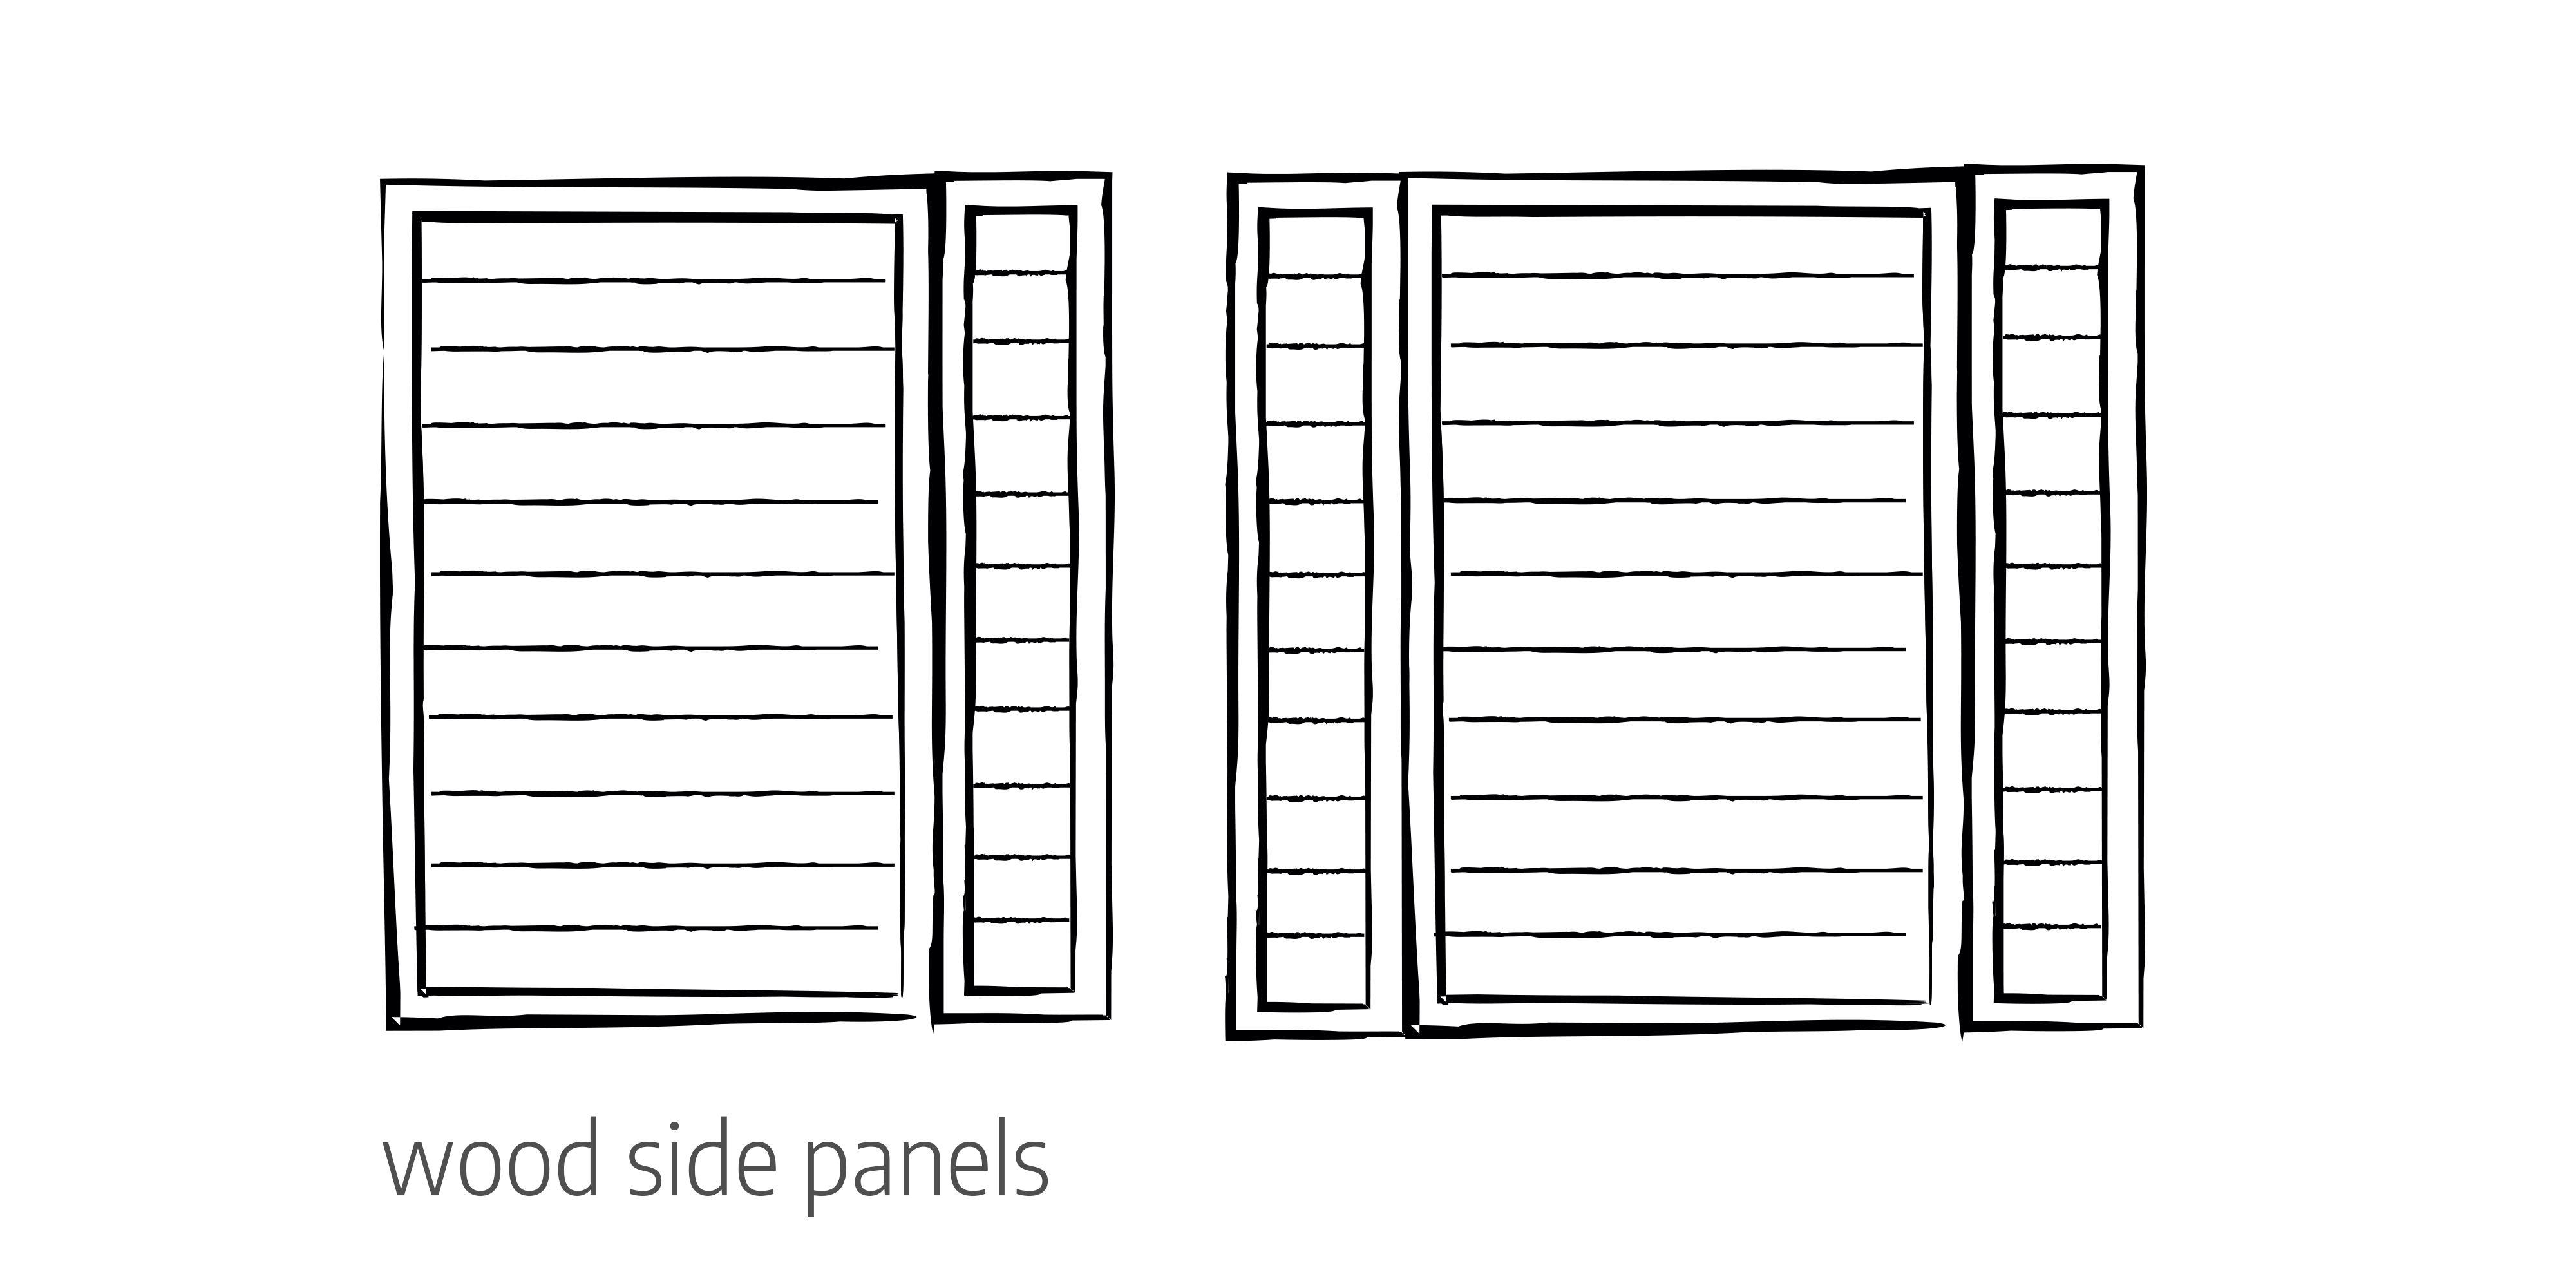 Wood side panels door configurations Urban Front